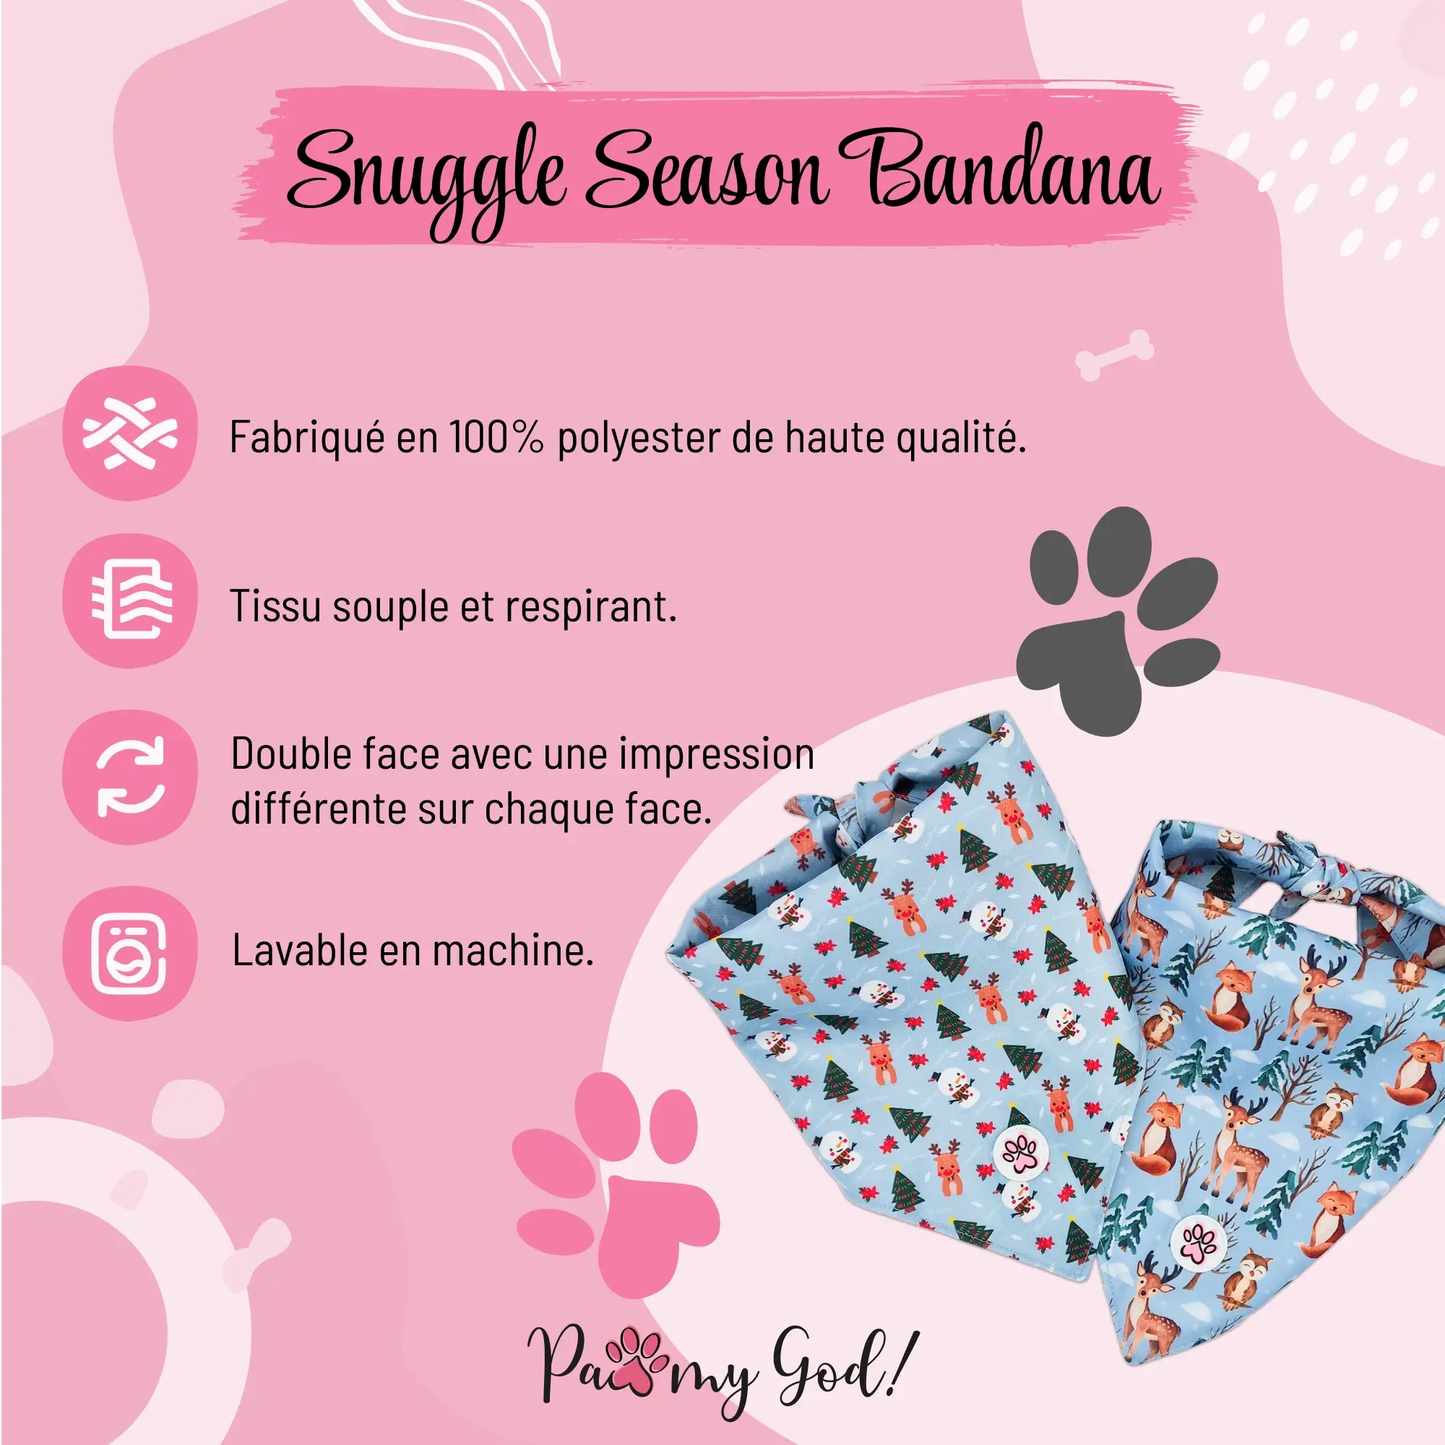 Snuggle Season Bandana Features